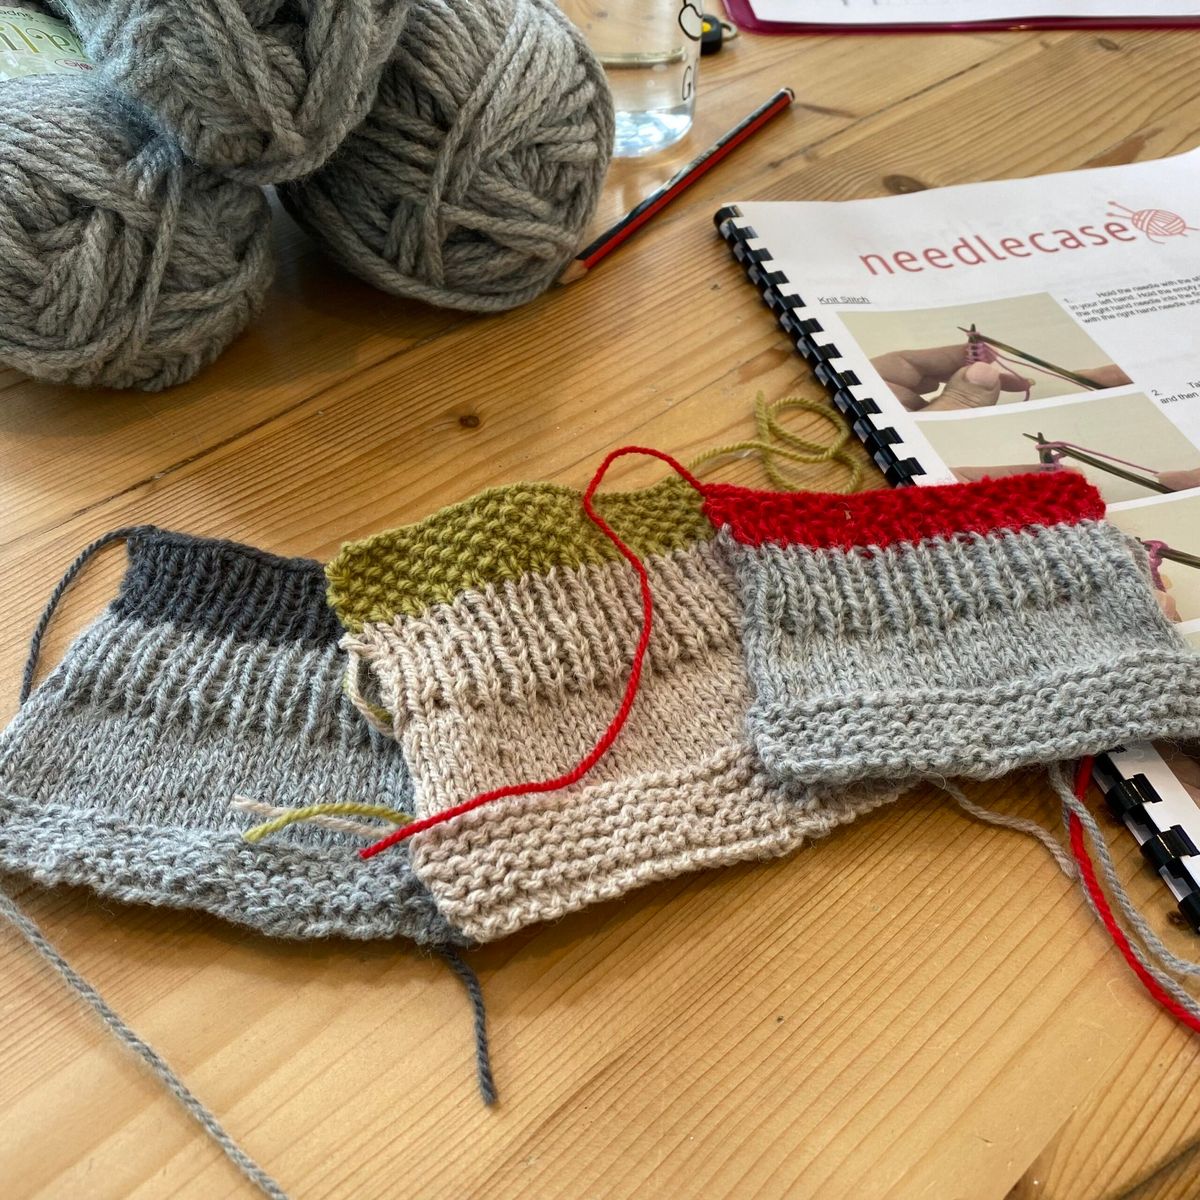 Knitting for Beginners Workshop